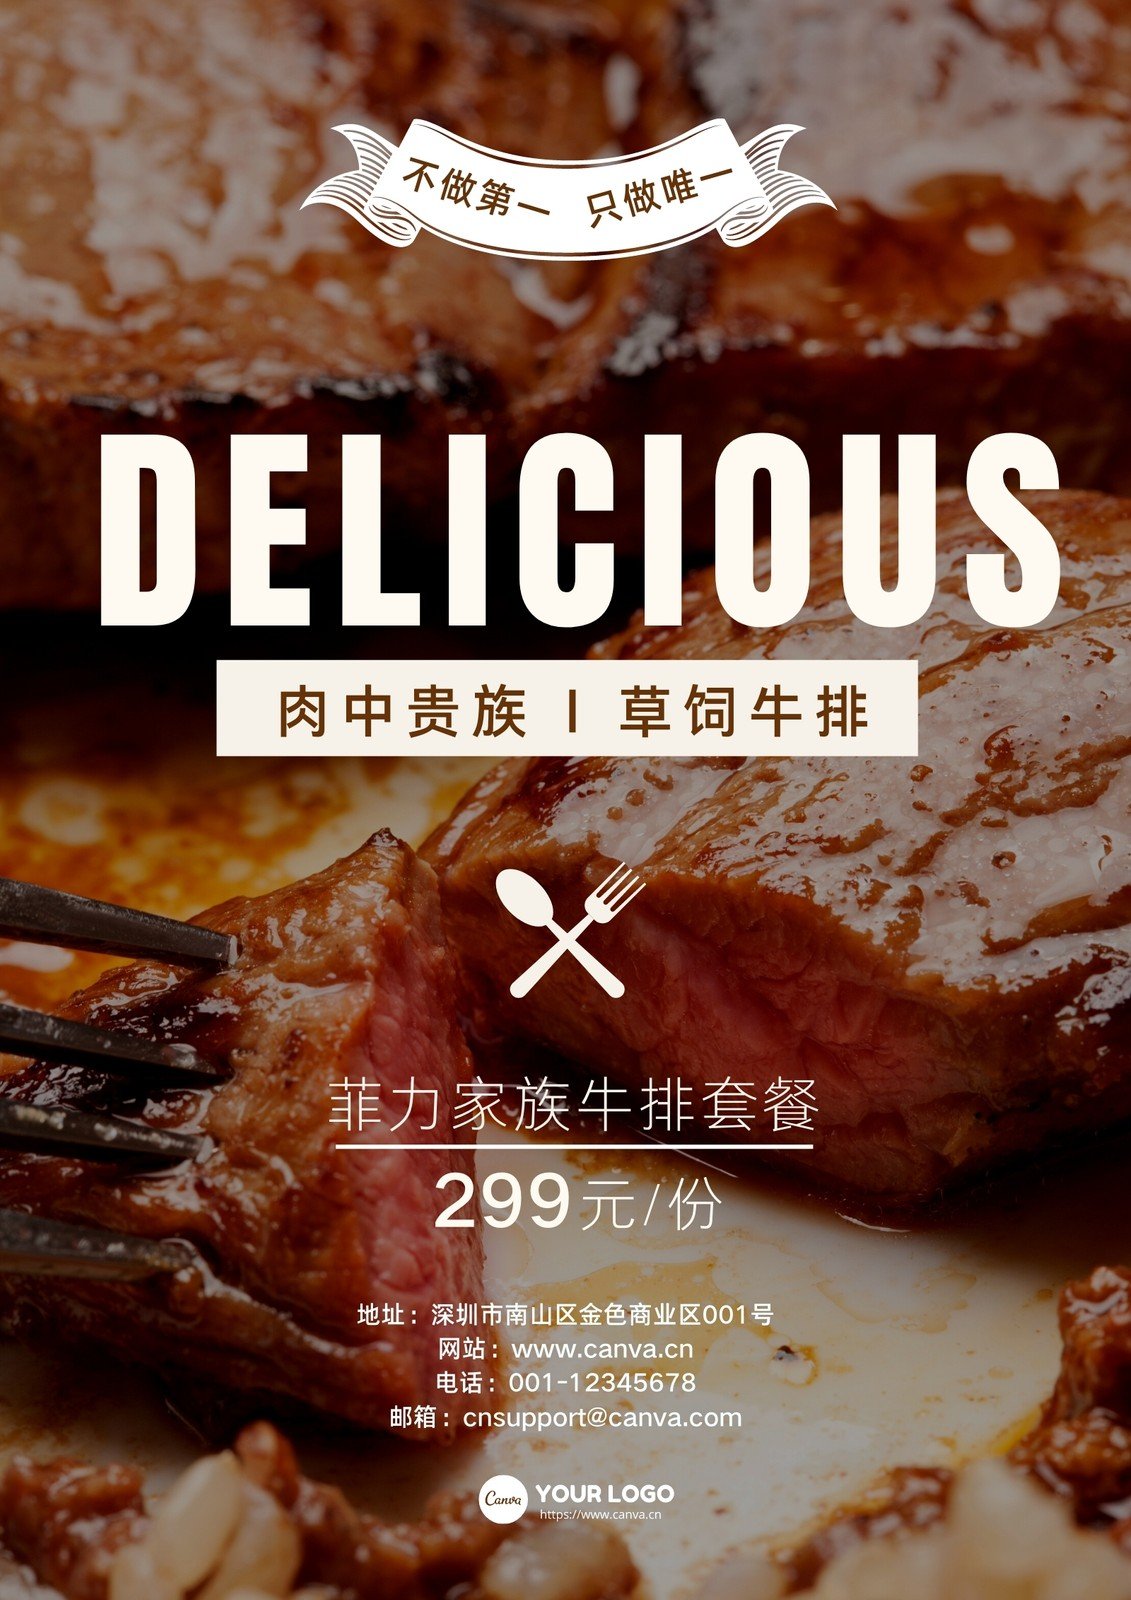 灰黄色牛排简洁餐饮促销中文海报 模板 Canva可画